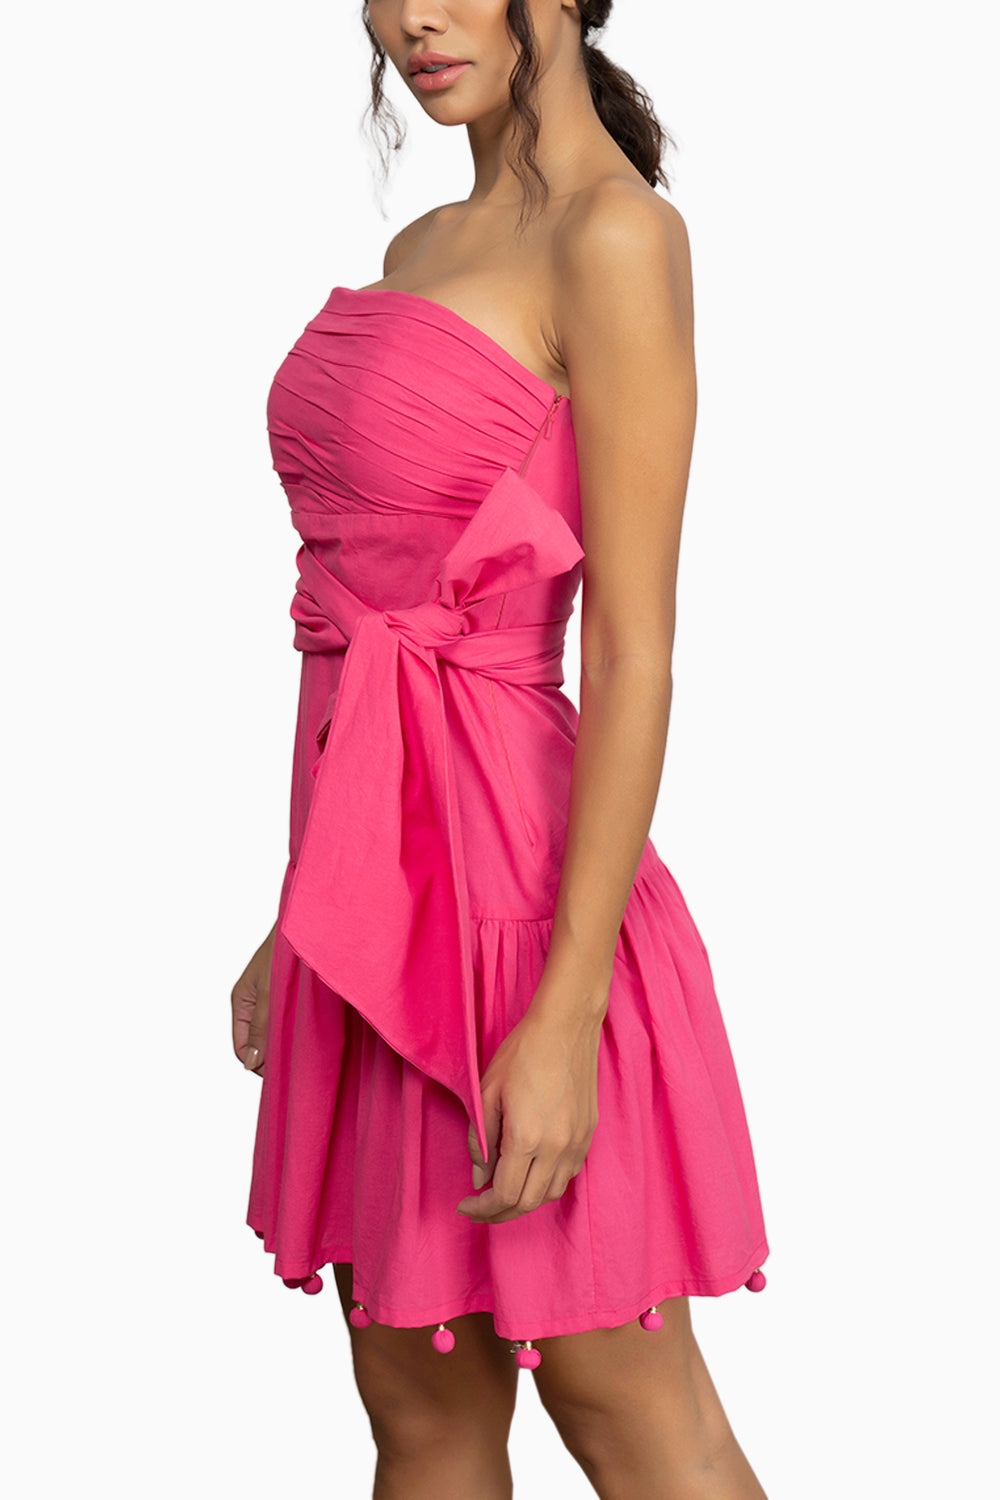 Cinque Terre Pink Dress